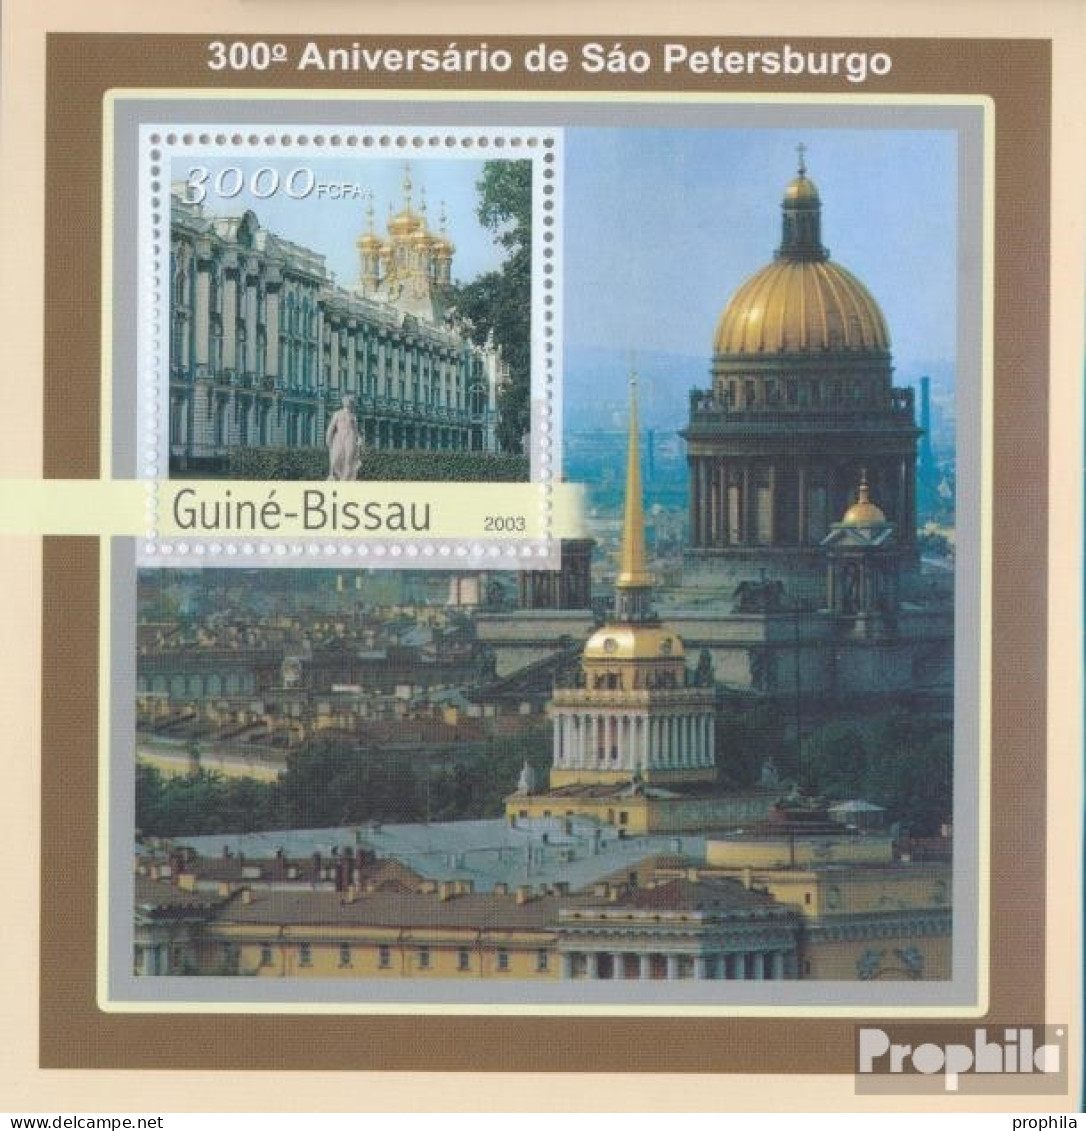 Guinea-Bissau Block 393 (kompl. Ausgabe) Postfrisch 2003 300 Jahre St. Petersburg - Guinea-Bissau